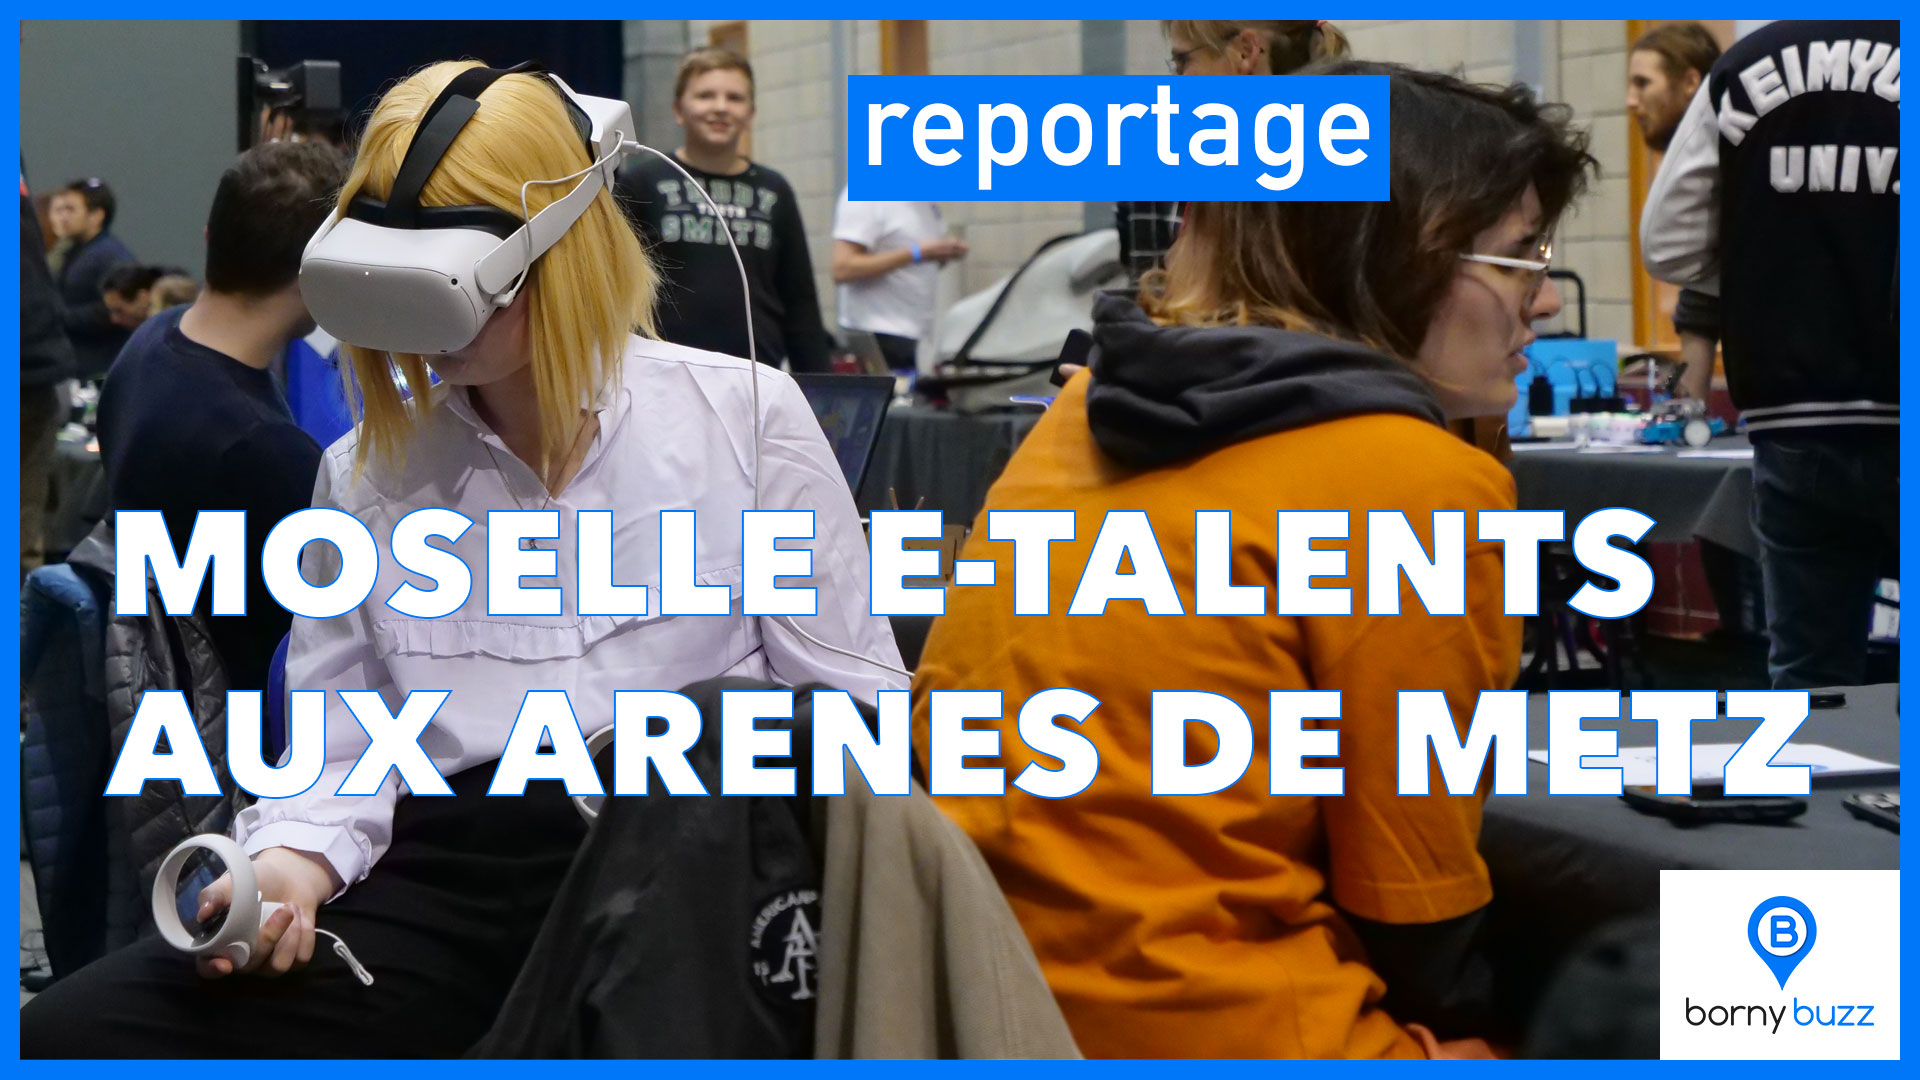 Moselle E-Talents aux Arènes de Metz | Photo et graphisme BORNYBUZZ / Aurélien ZANN